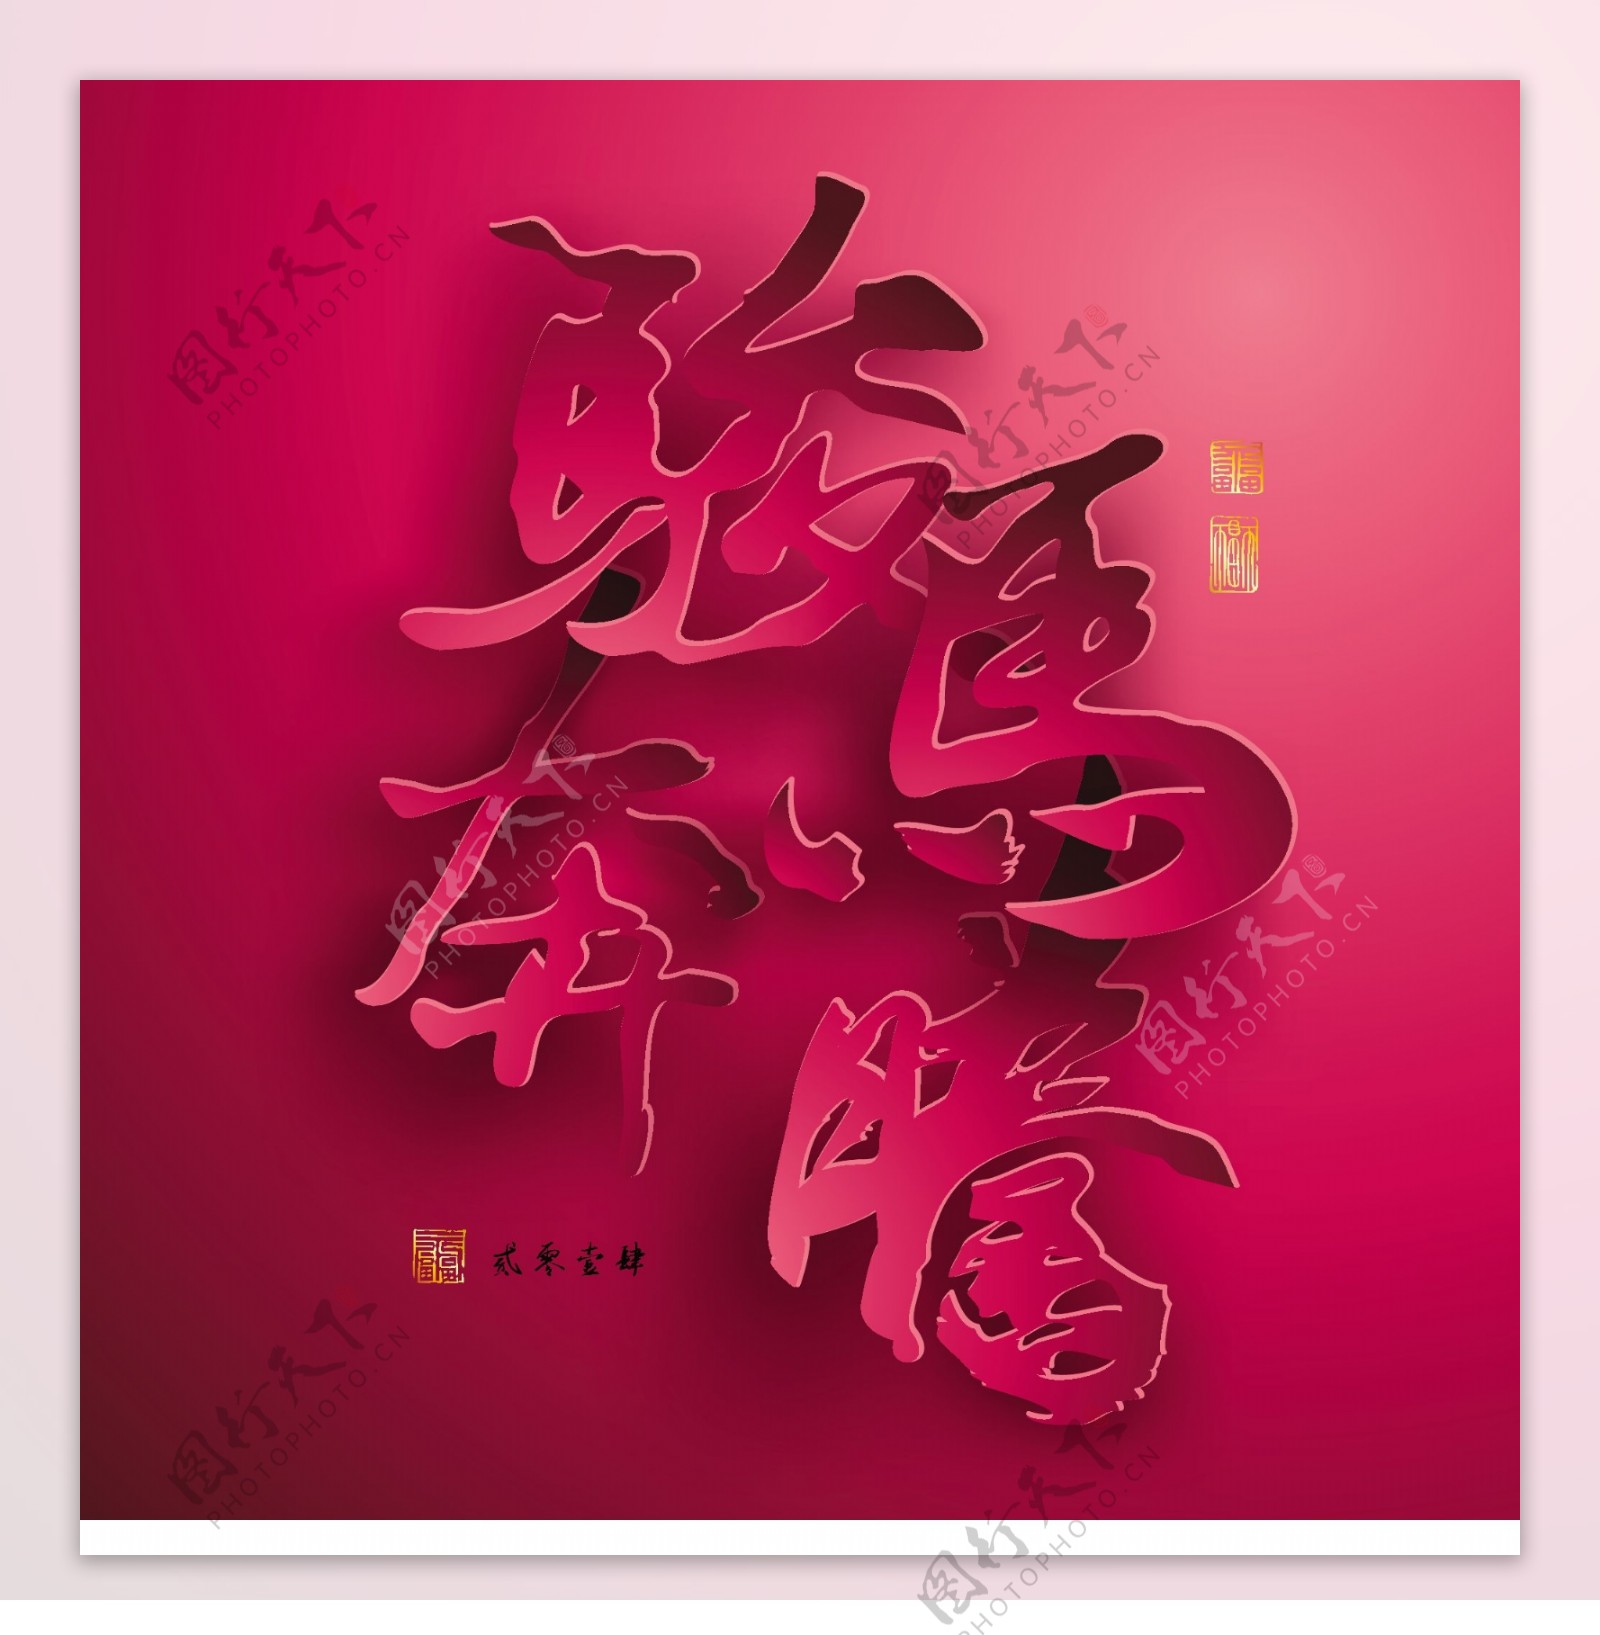 矢量图形的中国新年纸翻译中国书法马奔腾2014邮票迈向成功的翻译的好运气